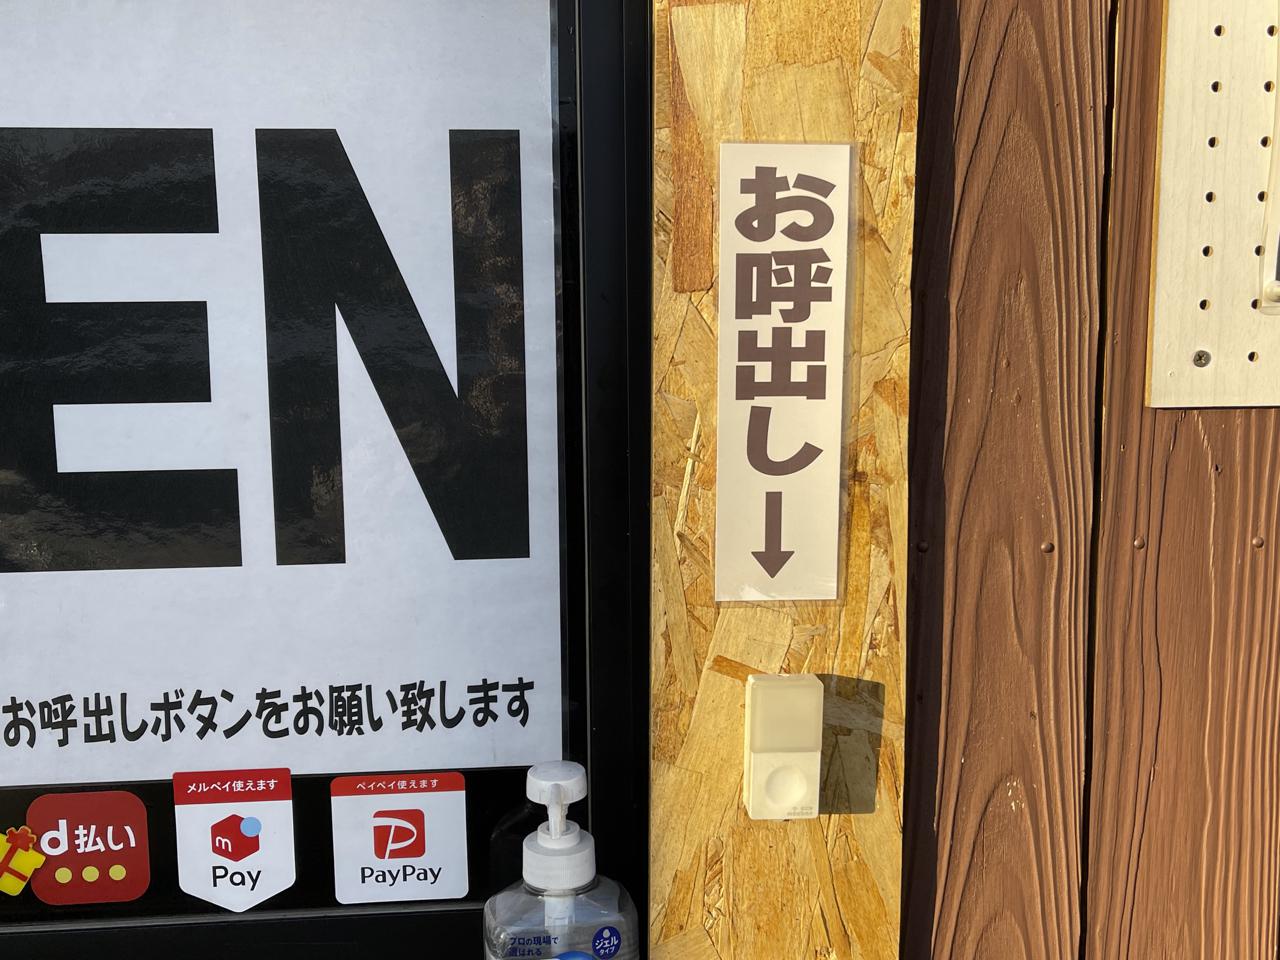 宮崎のテイクアウト専門店｢炎ノ鶏ヒノトリ｣の地鶏が安くておいしい！